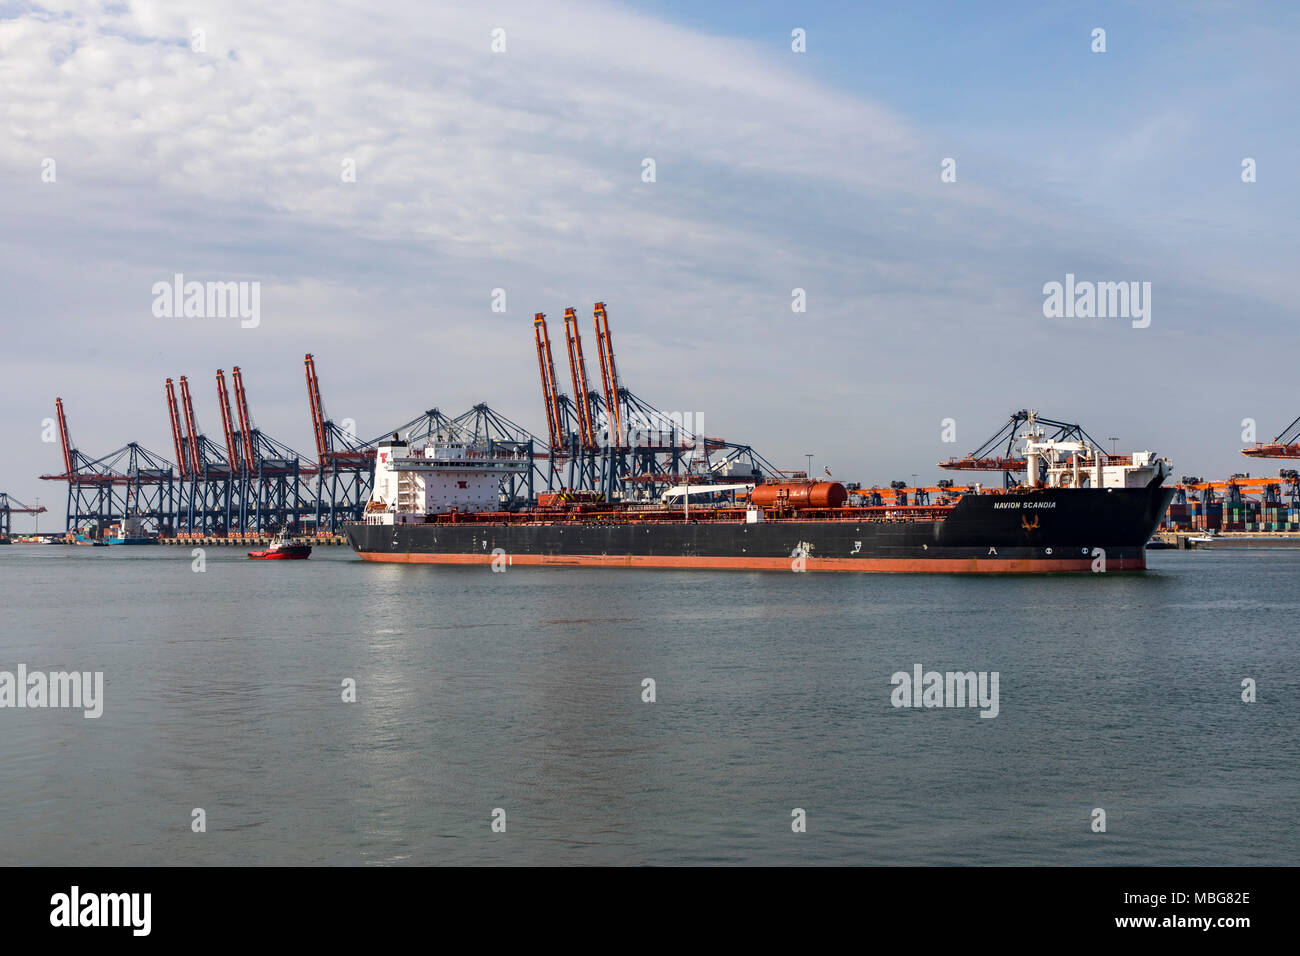 Der Hafen von Rotterdam, Niederlande, Deep-sea port Maasvlakte 2, auf einer künstlich geschaffenen Land Bereich vor der ursprünglichen Küste, Euromax Contai Stockfoto